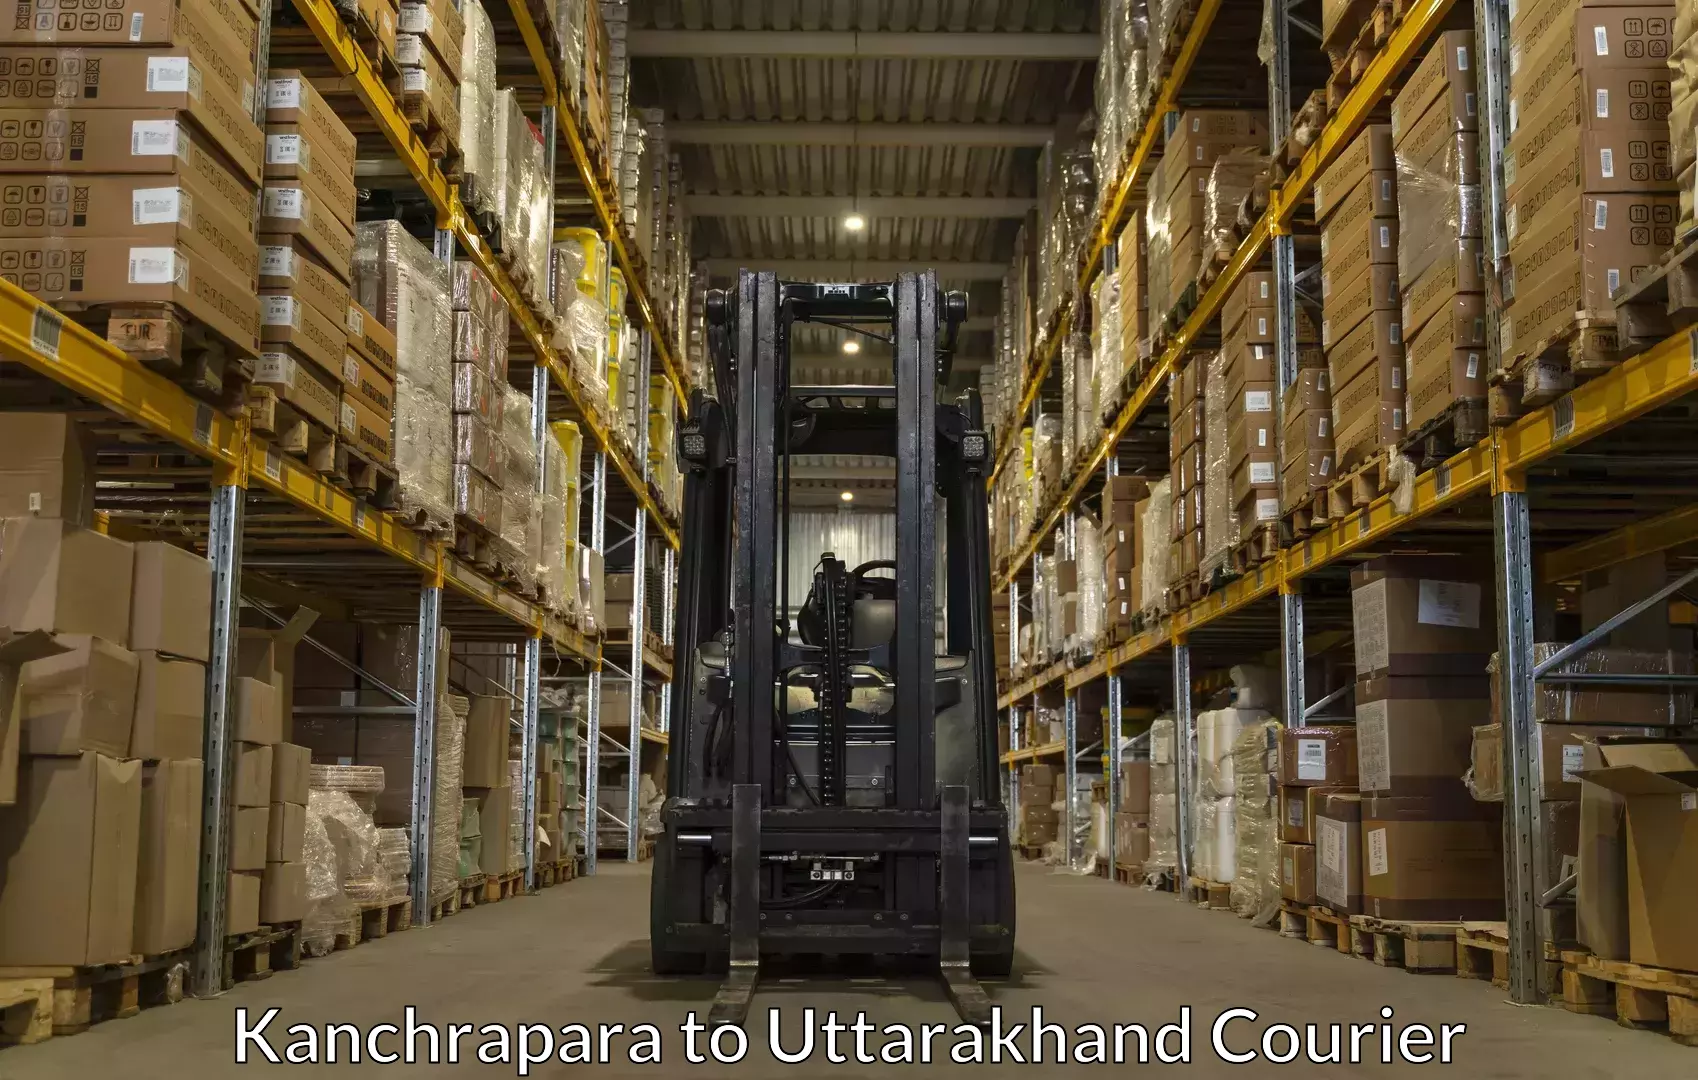 Luggage dispatch service Kanchrapara to Rudrapur